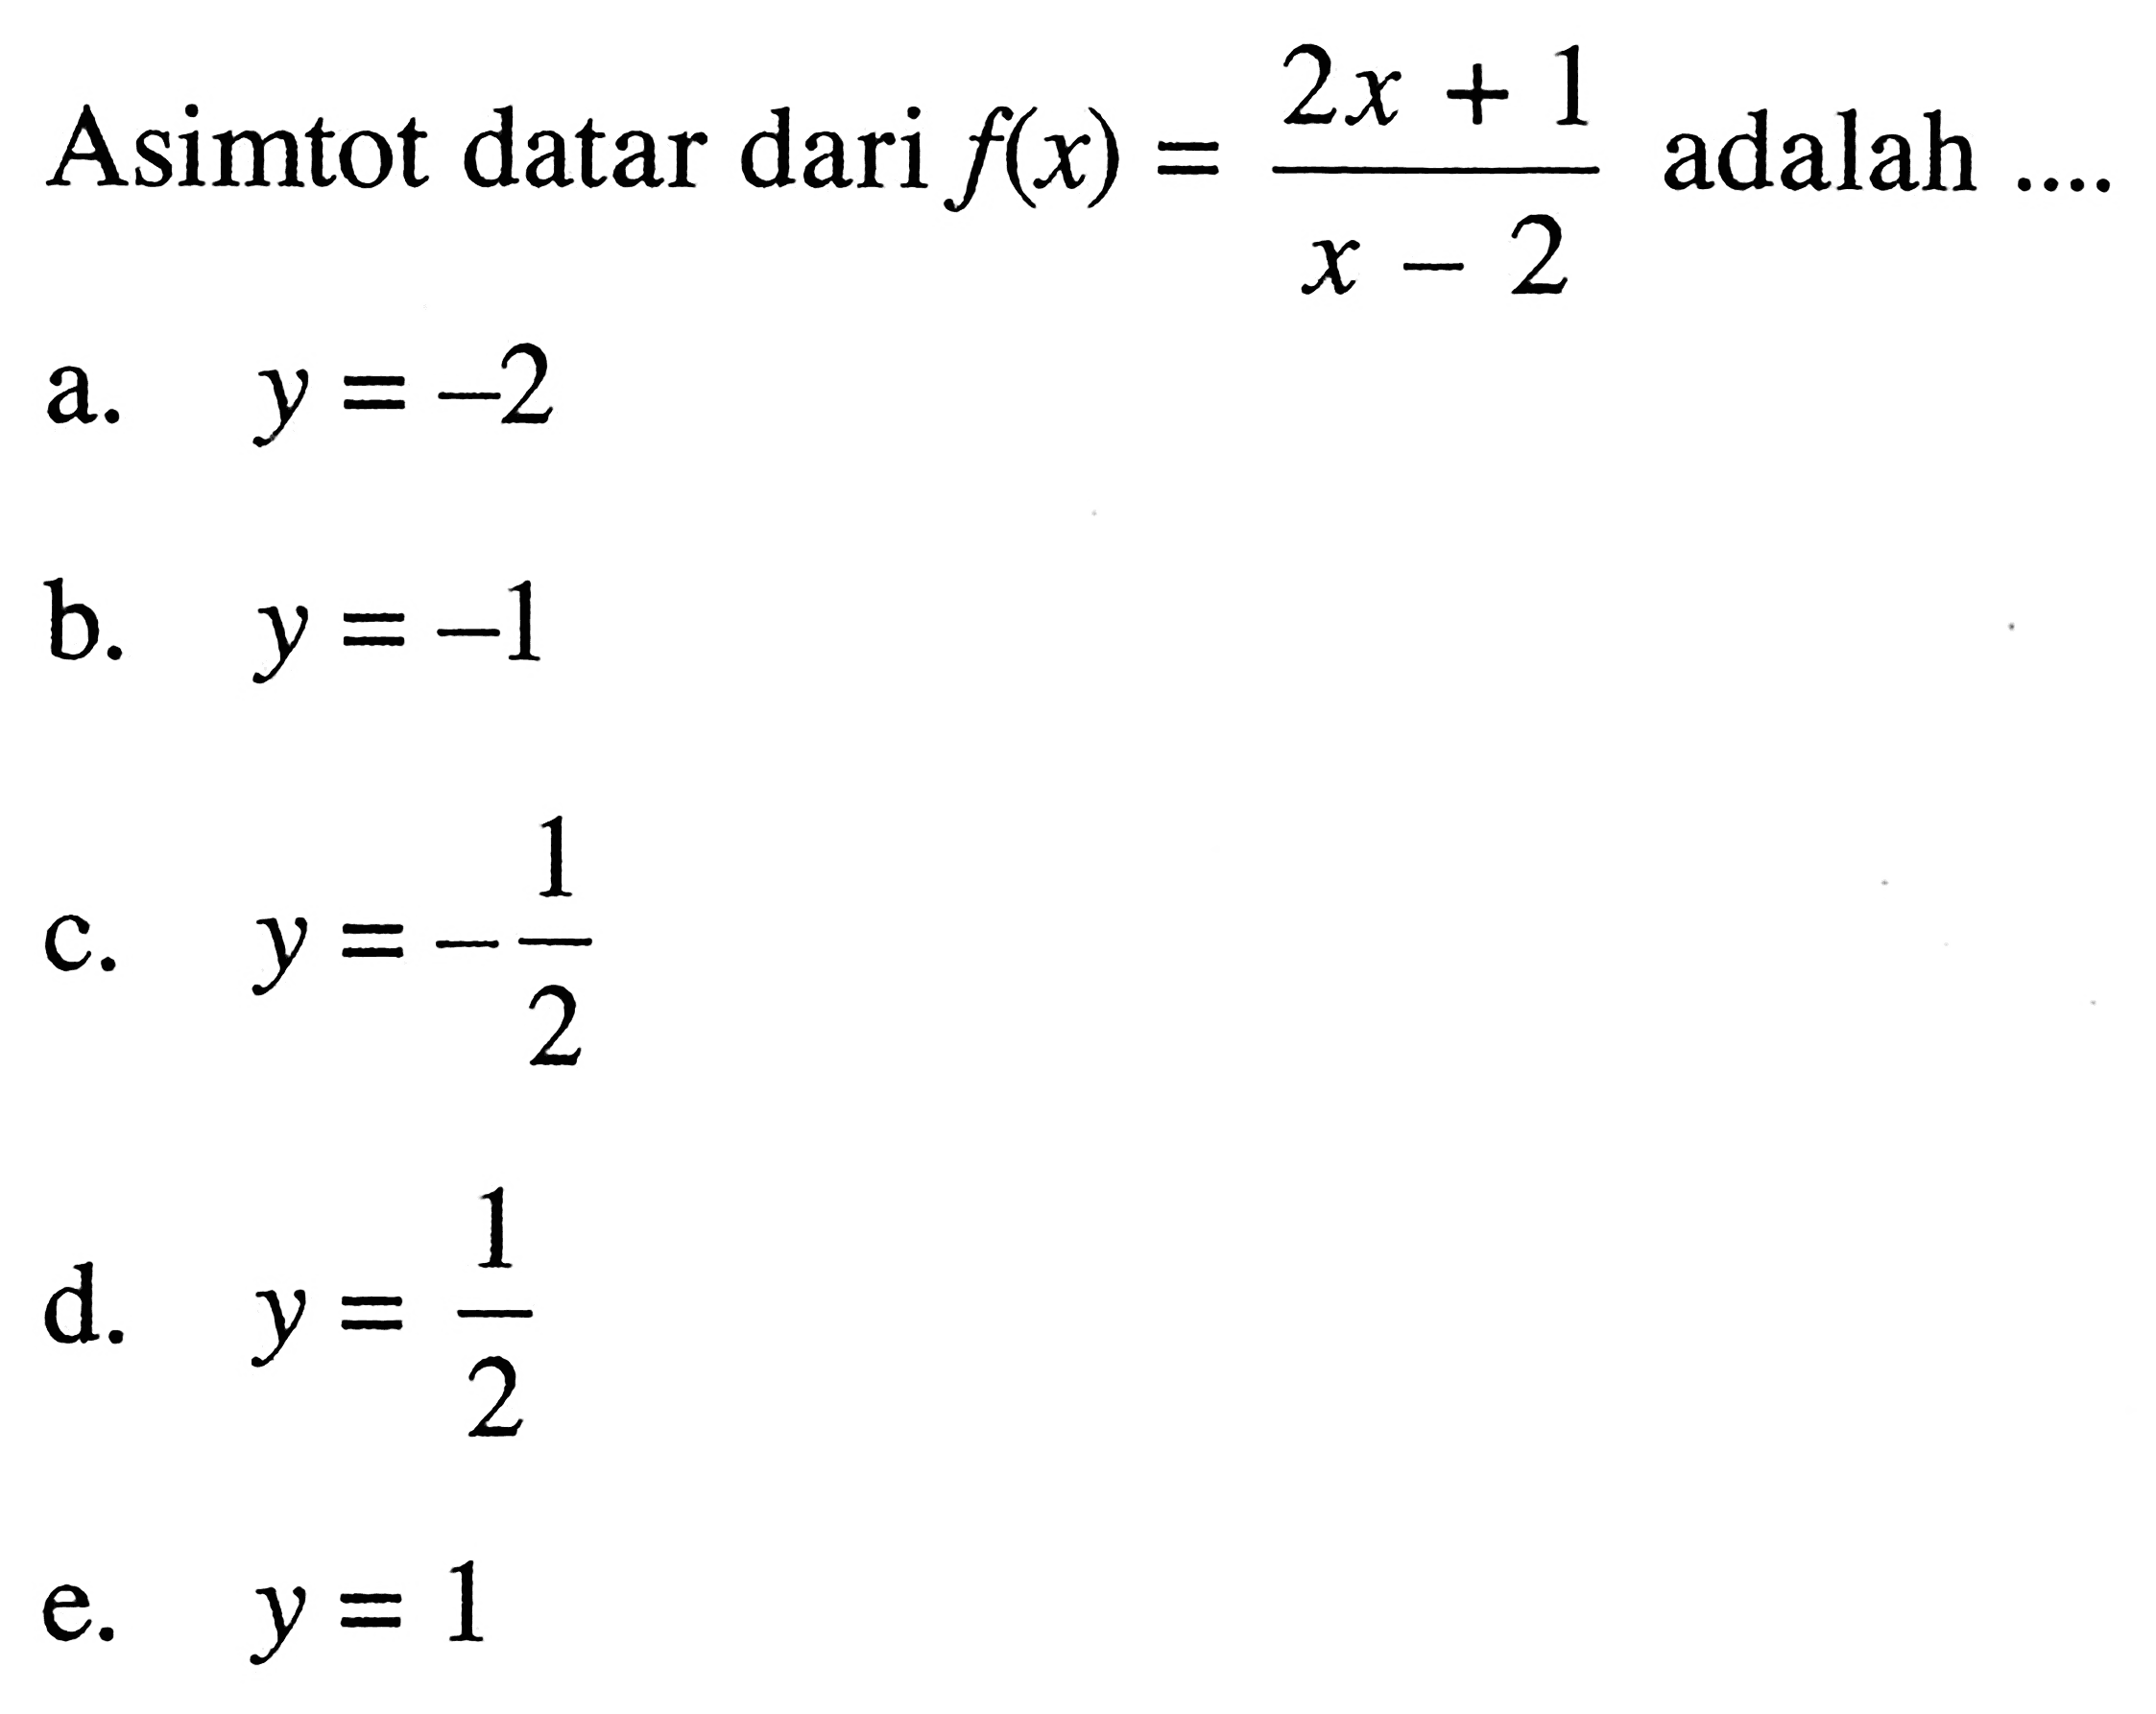 Asimtot datar dari f(x) = (2x + 1)/(x - 2) adalah ....